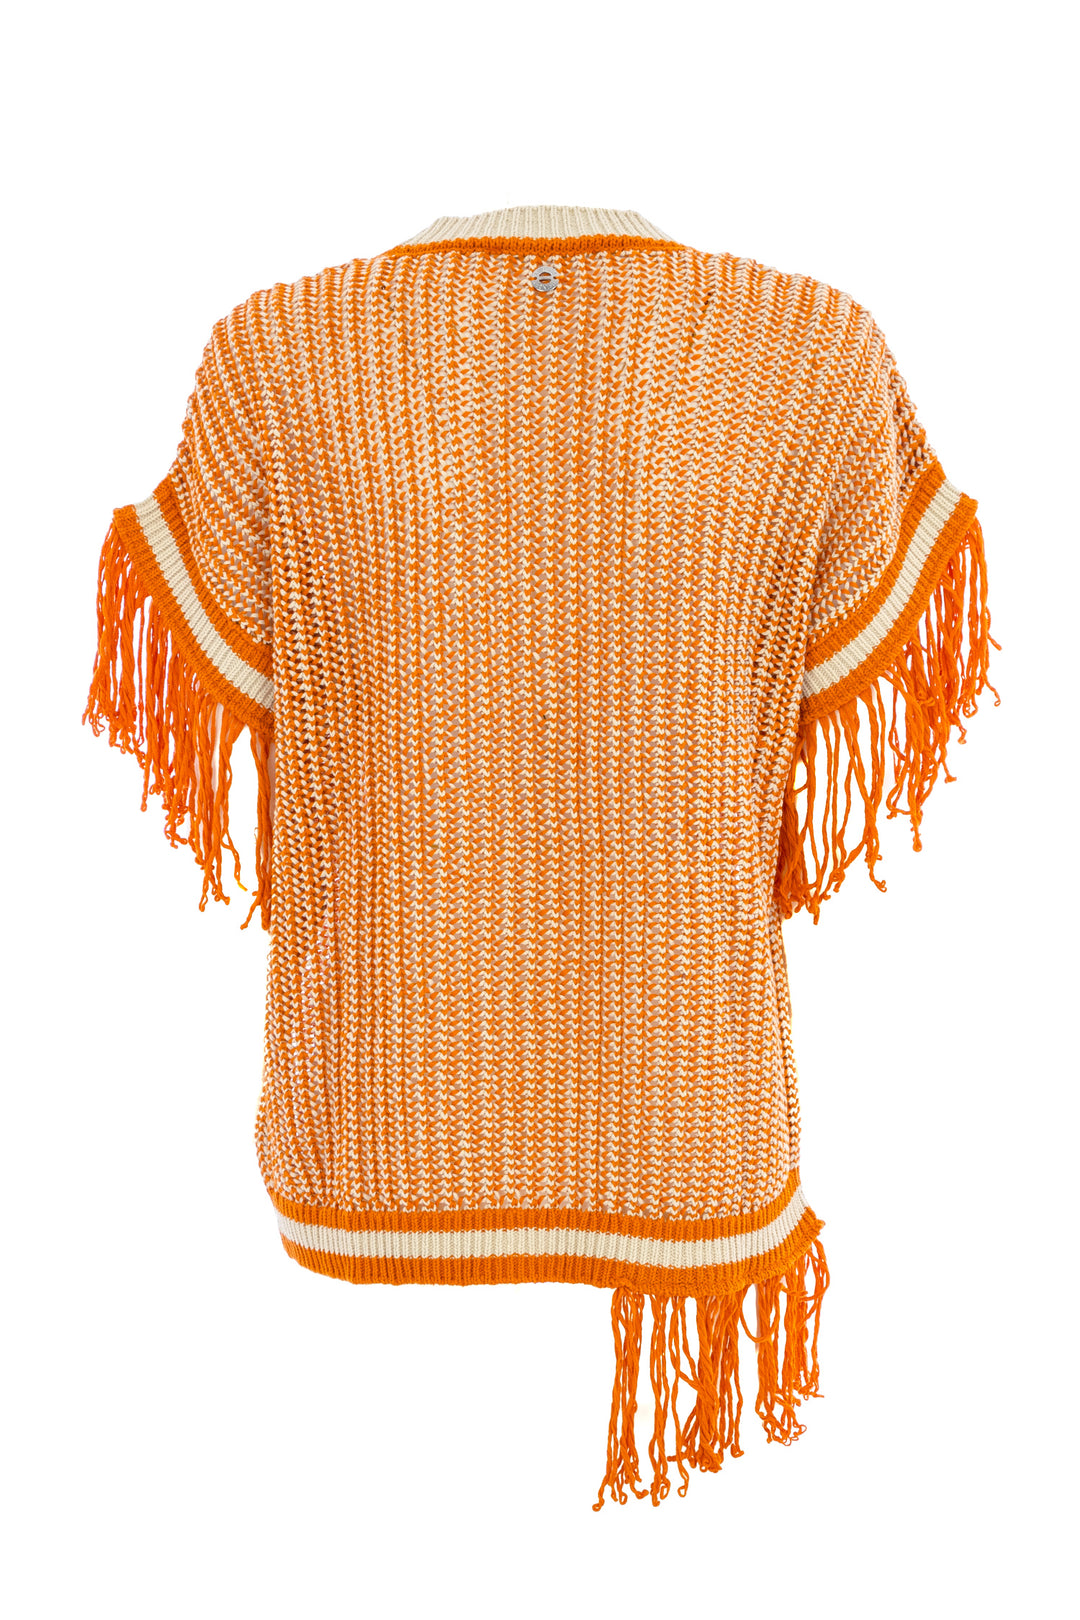 ACTITUDE TWINSET Maglia over arancio in crochet con frange asimmetriche - Mancinelli 1954